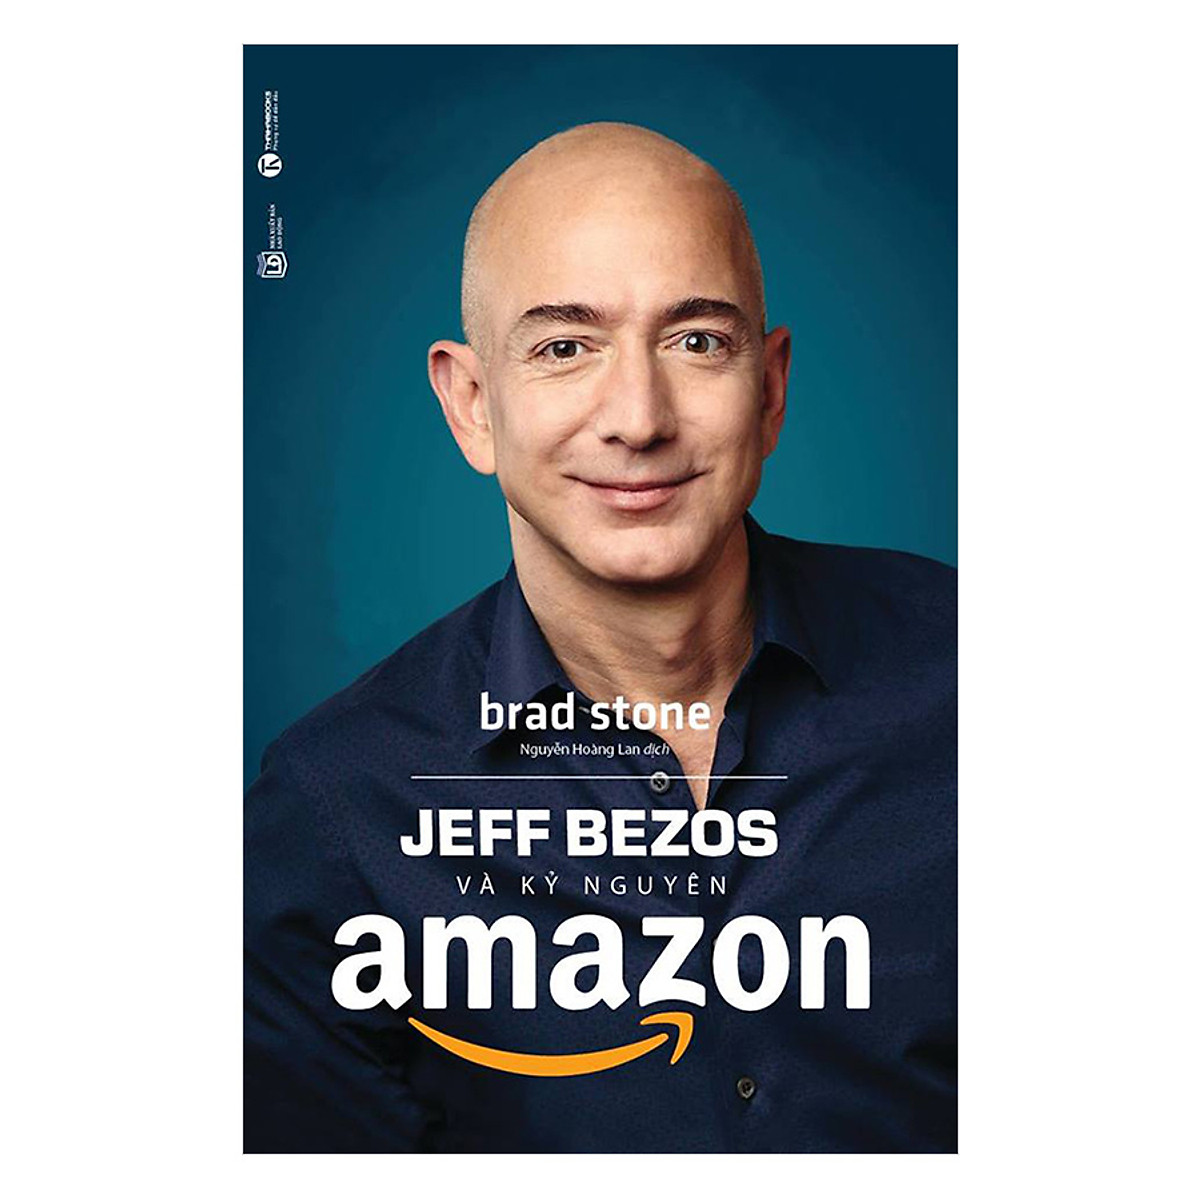 Jeff Bezos Và Kỷ Nguyên Amazon (Tái Bản) ebook PDF-EPUB-AWZ3-PRC-MOBI